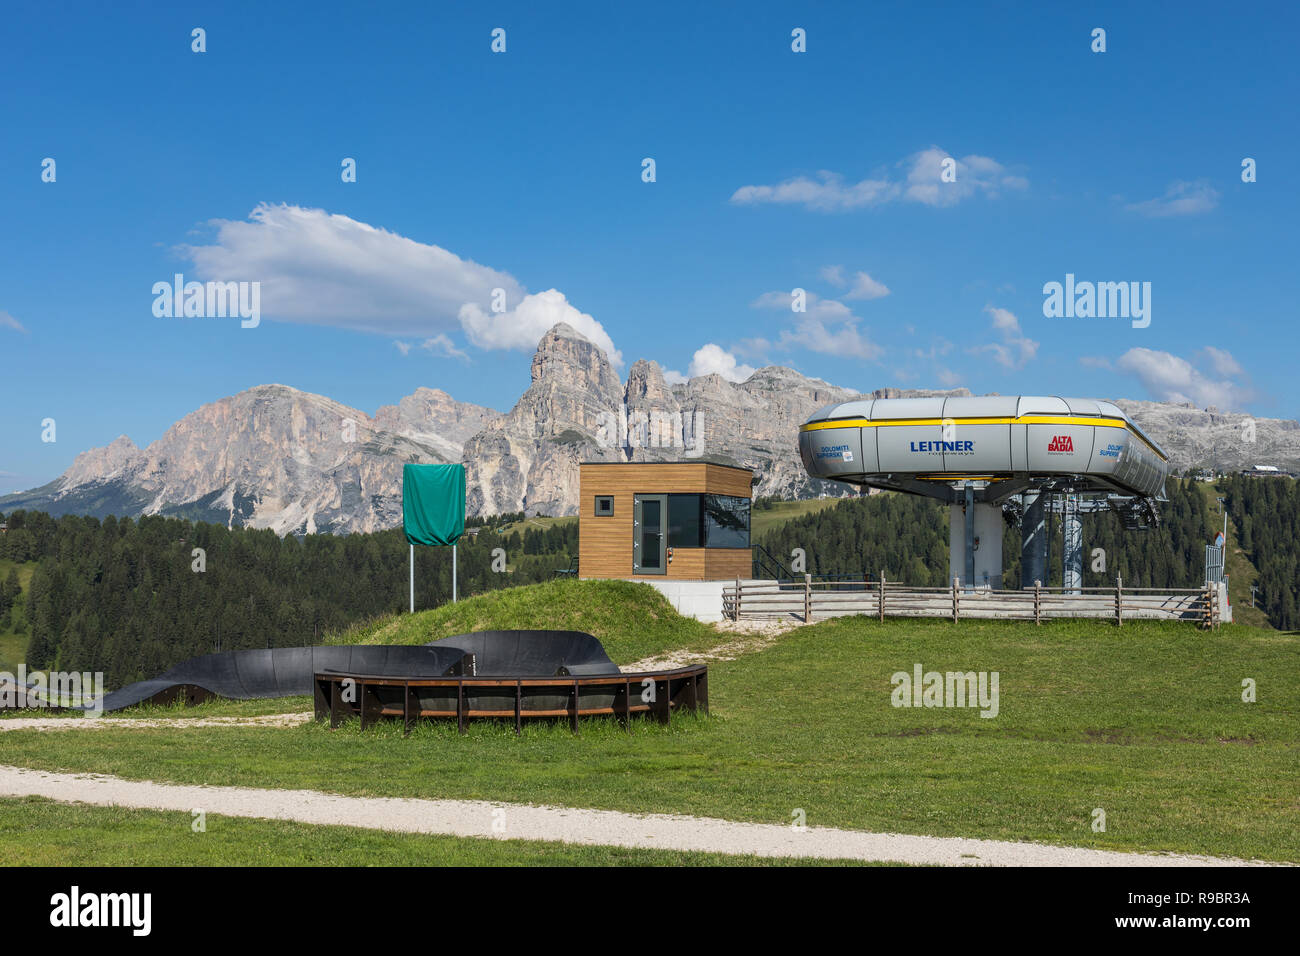 Upper ski lift or chairlift station in summer, Alta Badia ski resort in summer, Dolomites, Italy Stock Photo